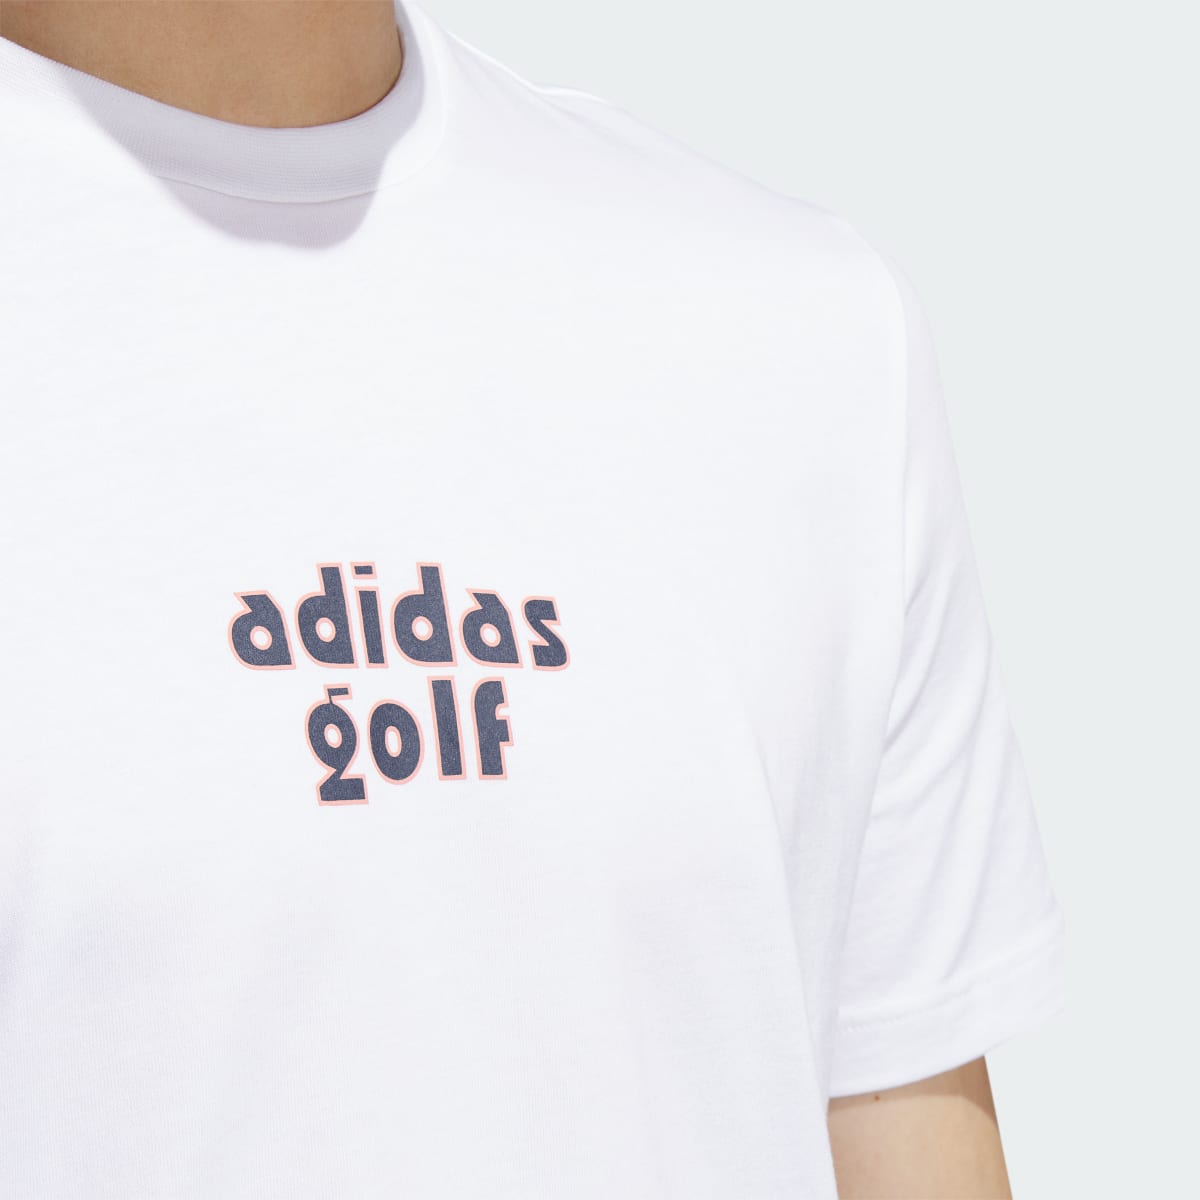 Adidas T-shirt de golf graphique. 7